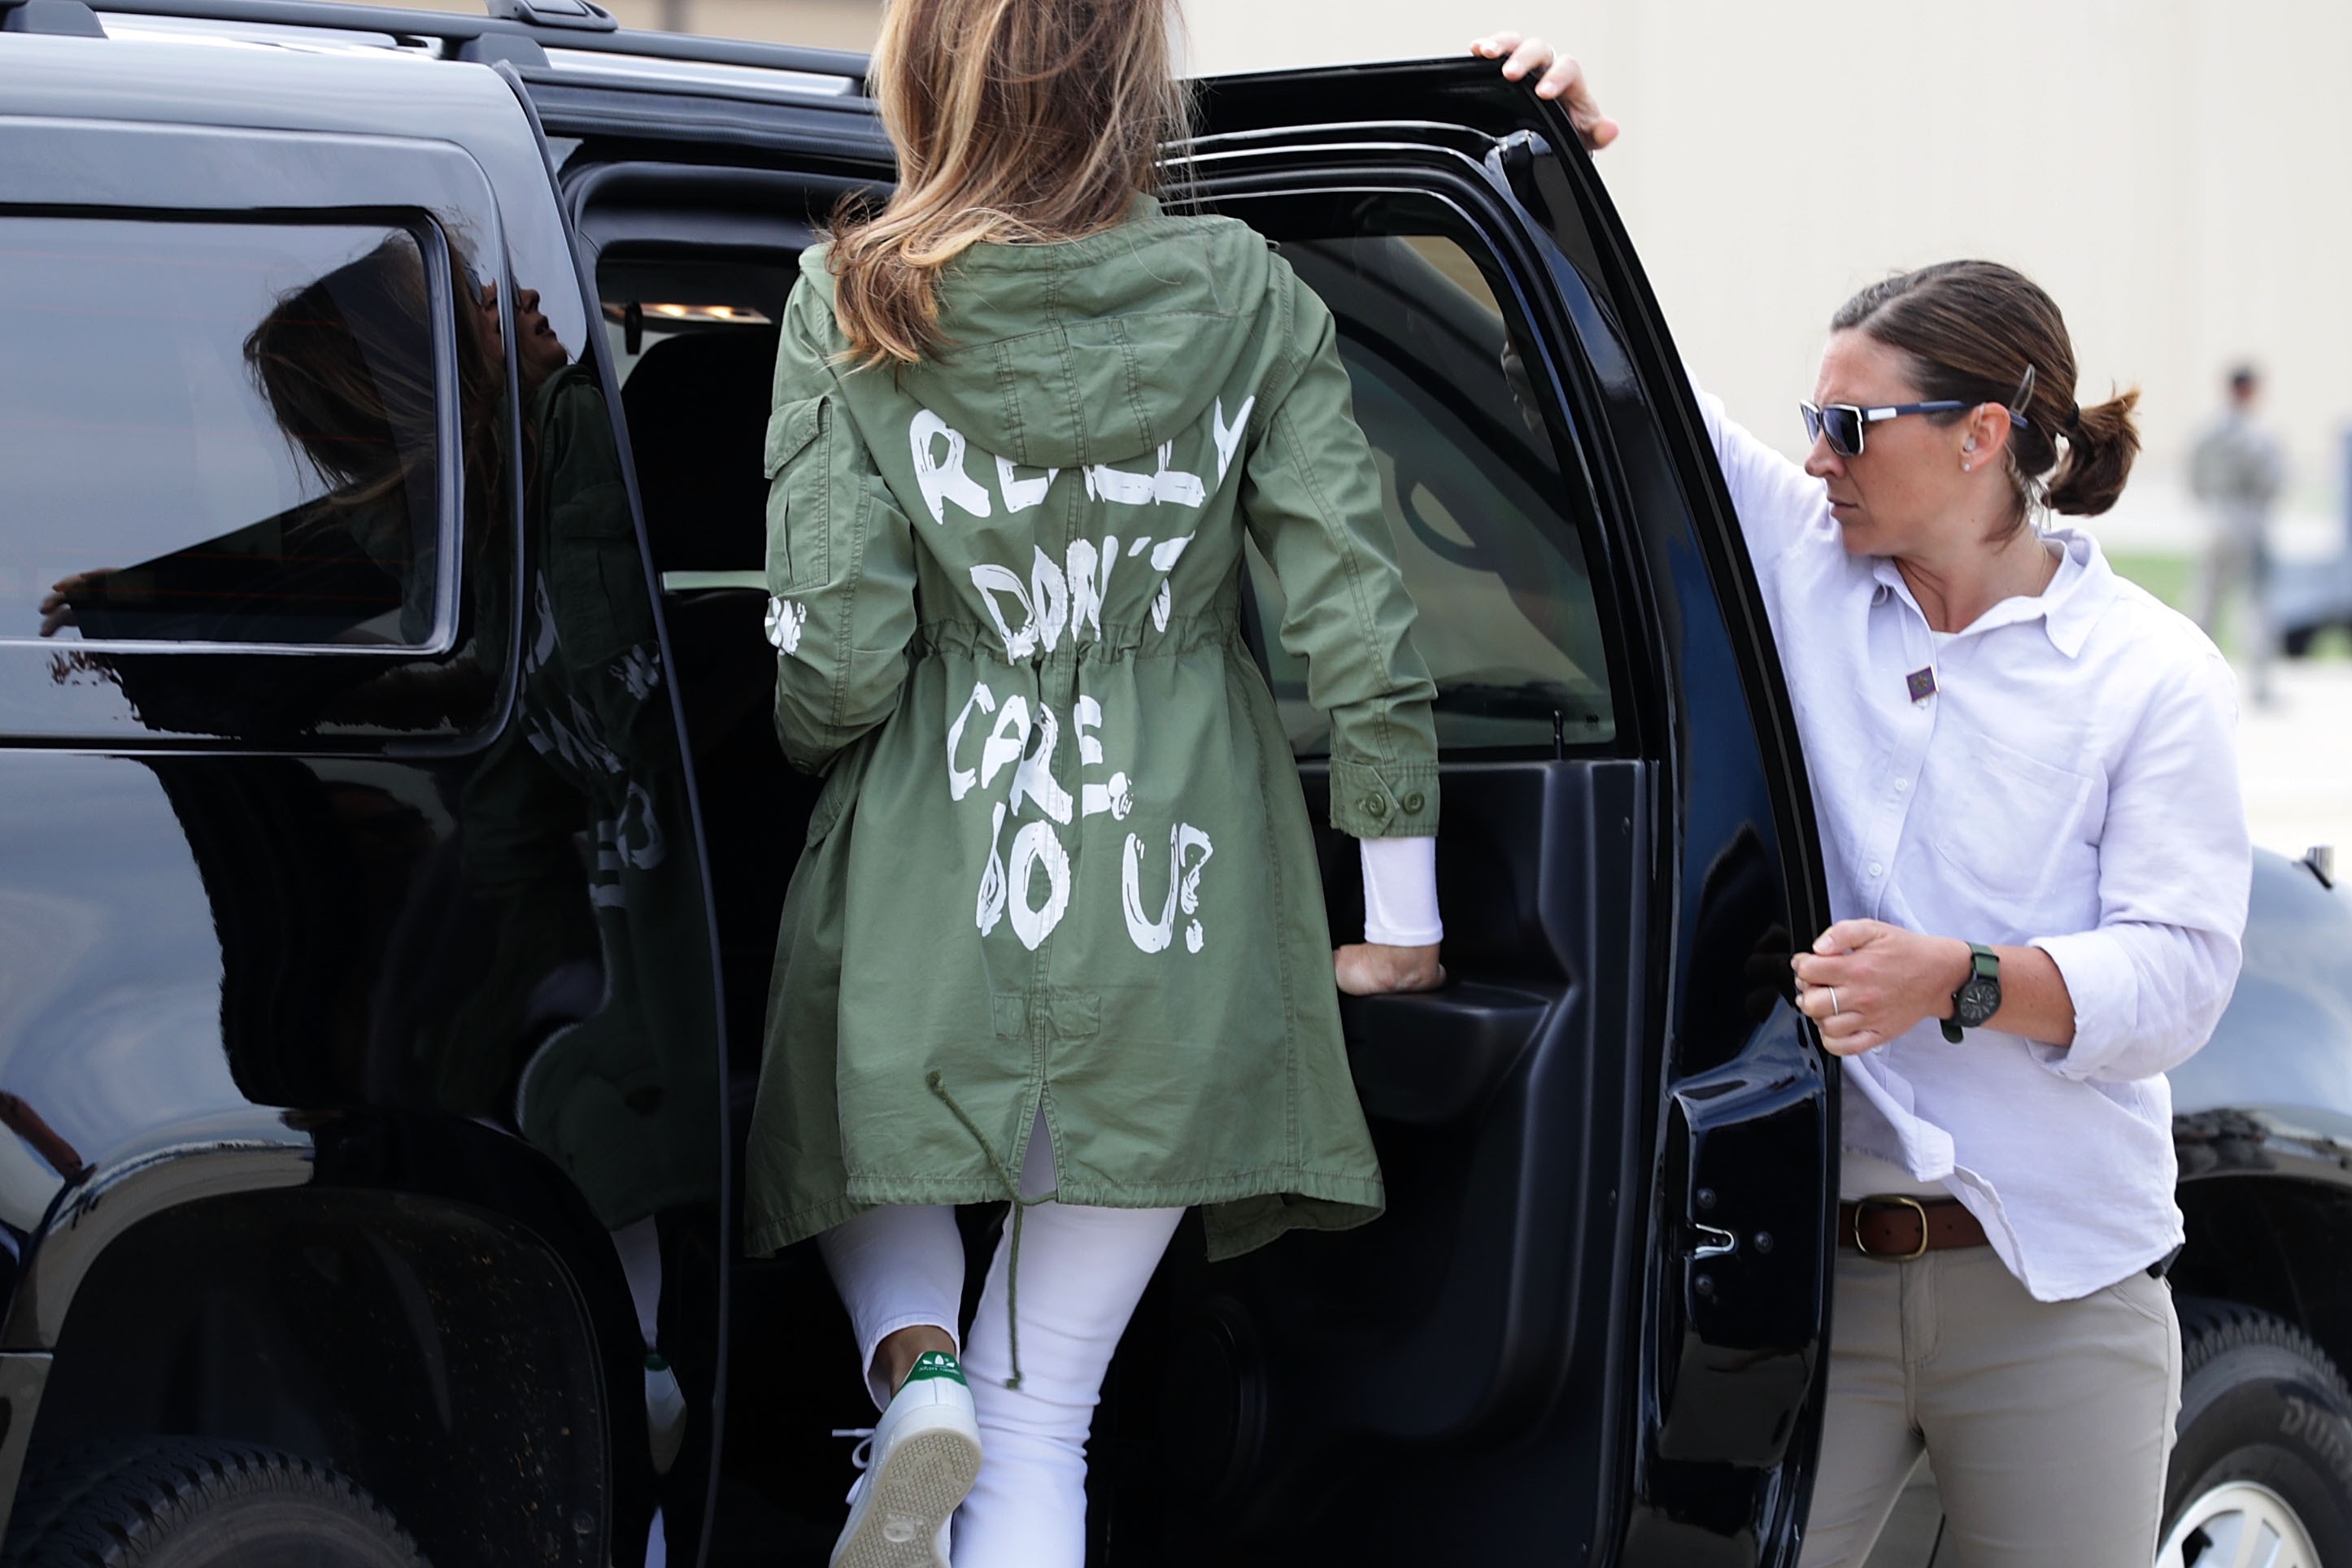 Melania usa jaqueta com frase de que não de importa em dia de visita a centro de imigrantes (Foto: Getty Images)